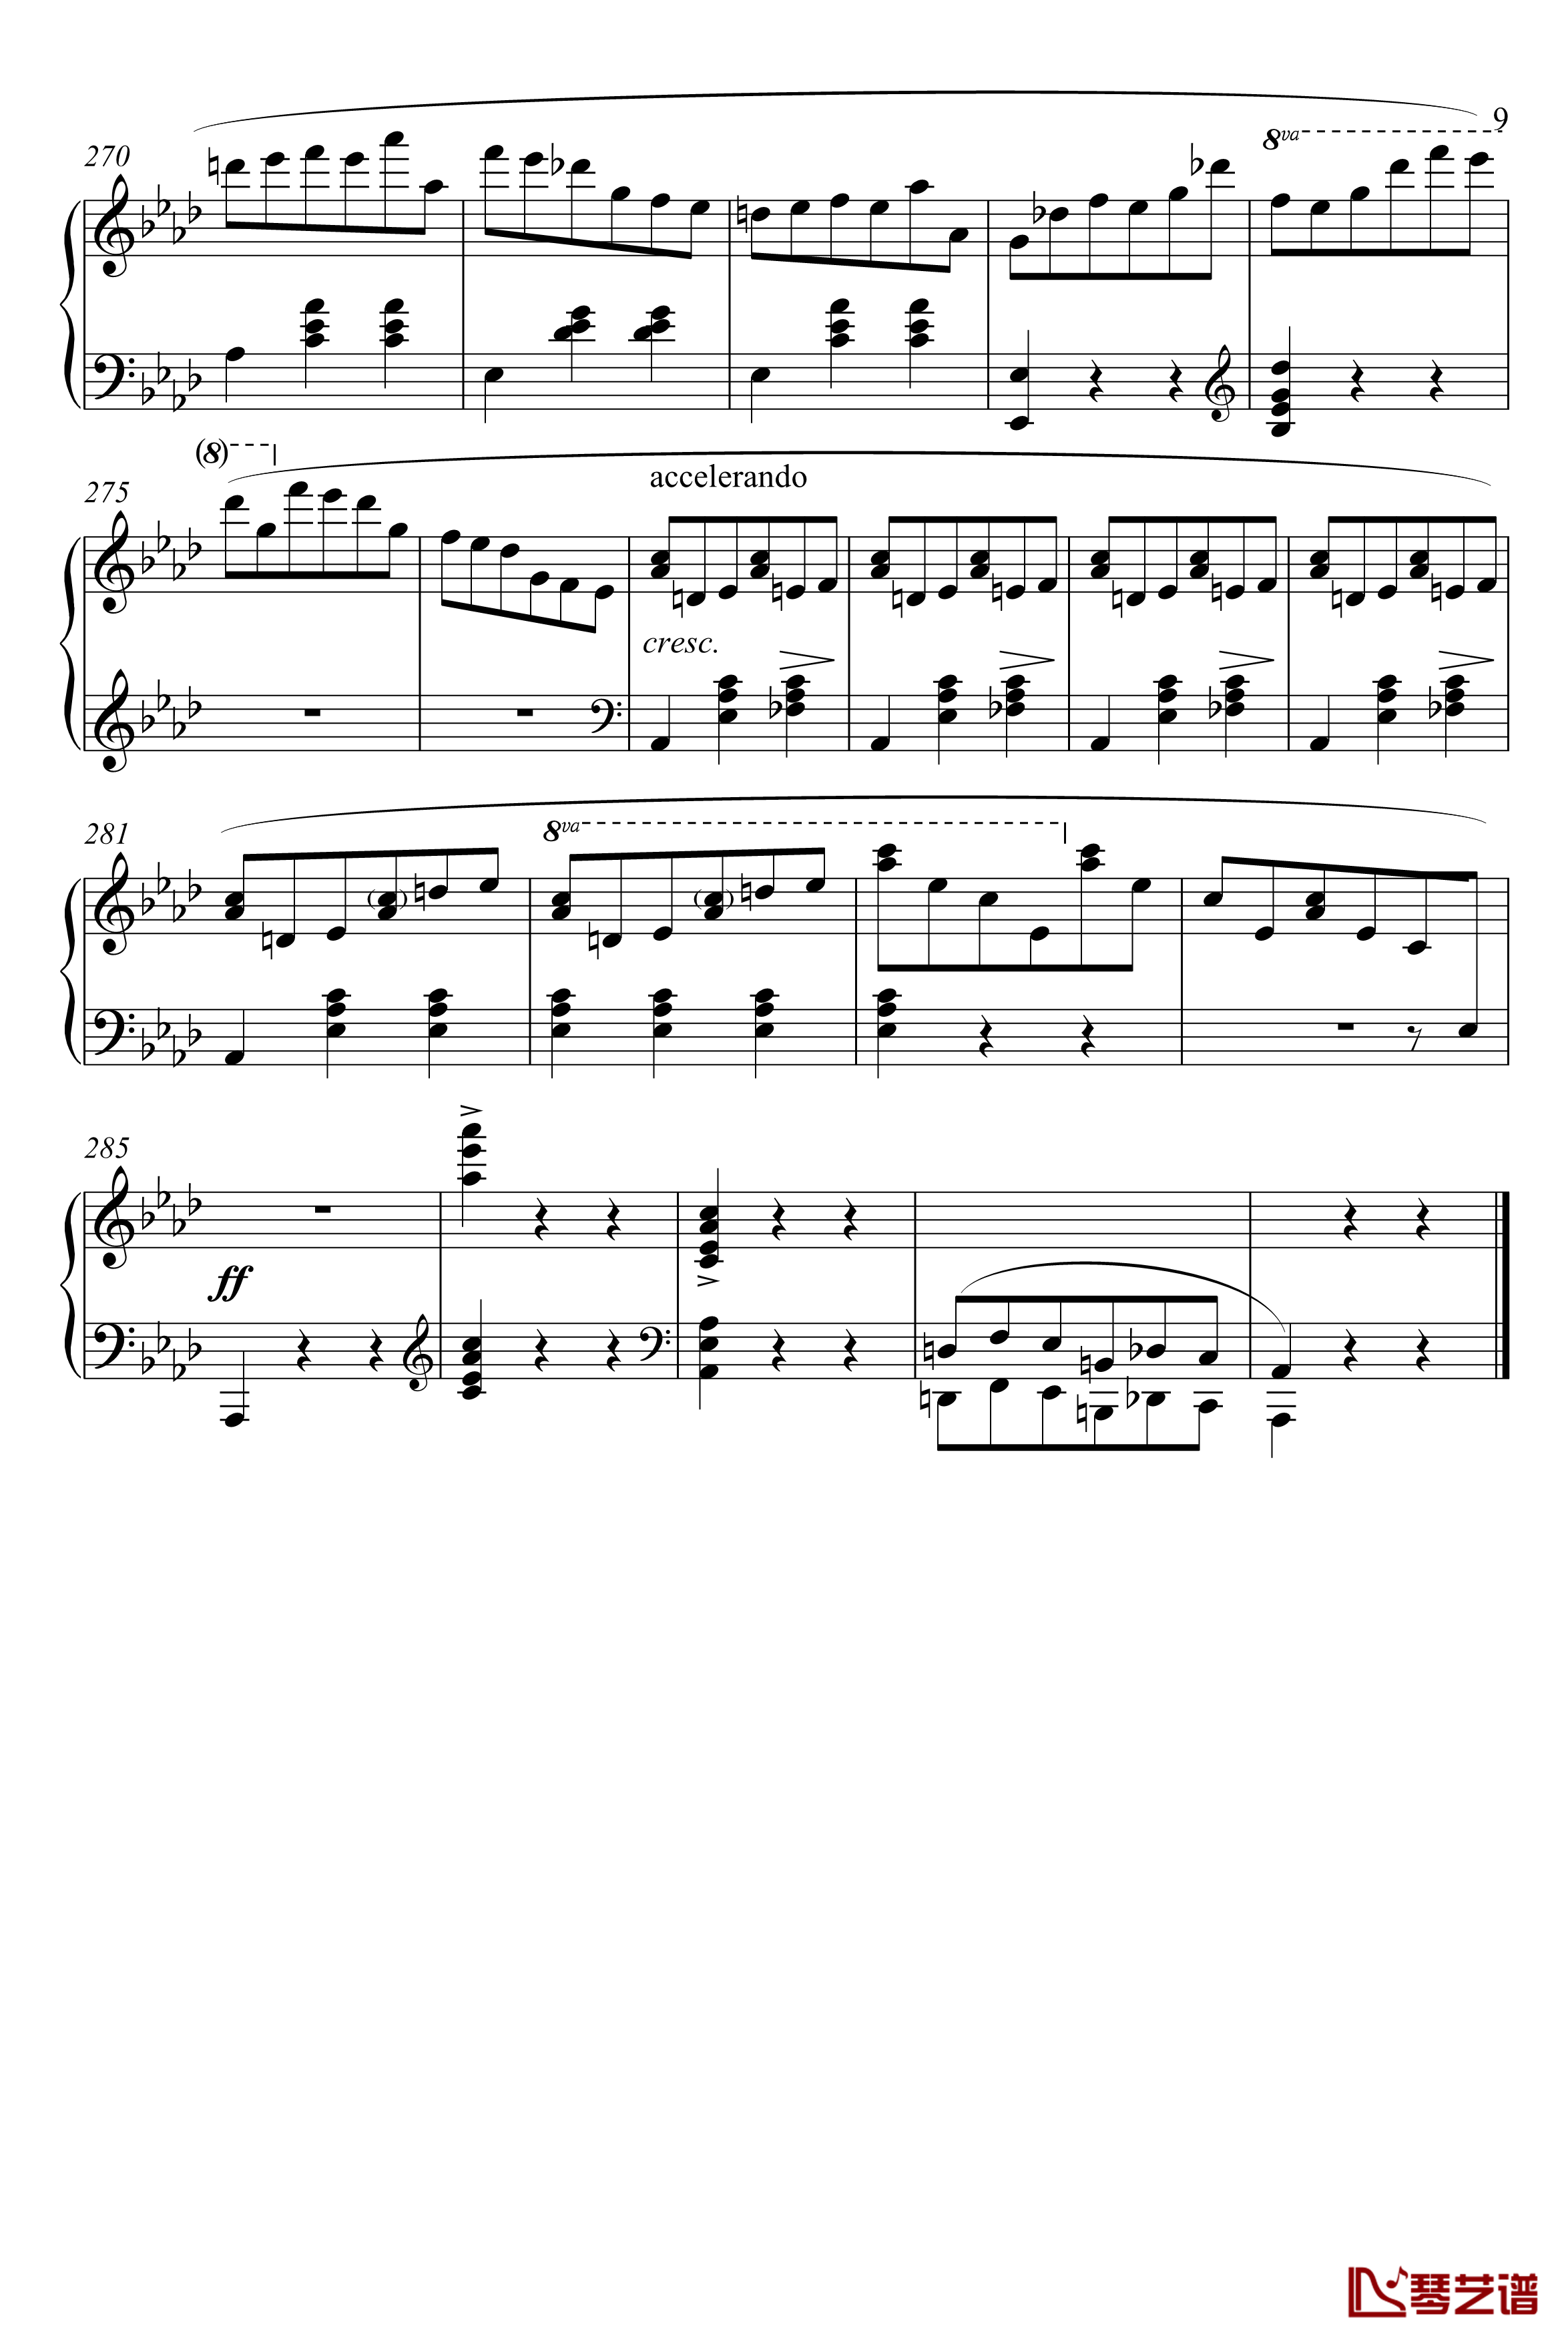 waltz No.5钢琴谱-肖邦-chopin